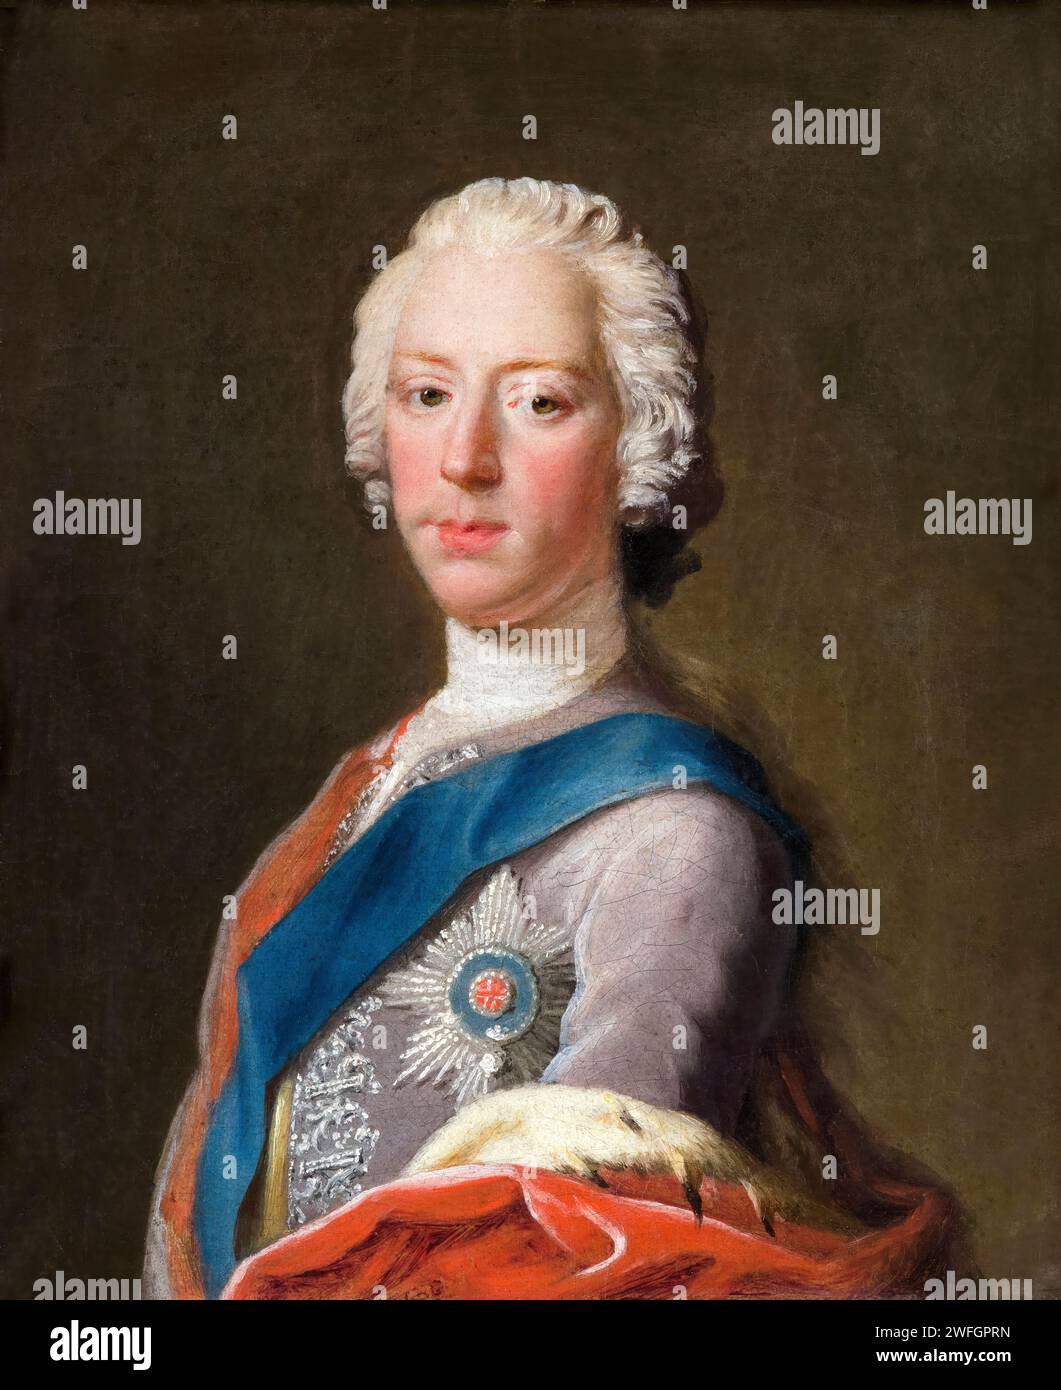 Principe Carlo Edoardo Stuart (1720-1788), soprannominato "Bonnie Prince Charlie", ritratto dipinto ad olio su tela di Allan Ramsay, circa 1745 Foto Stock